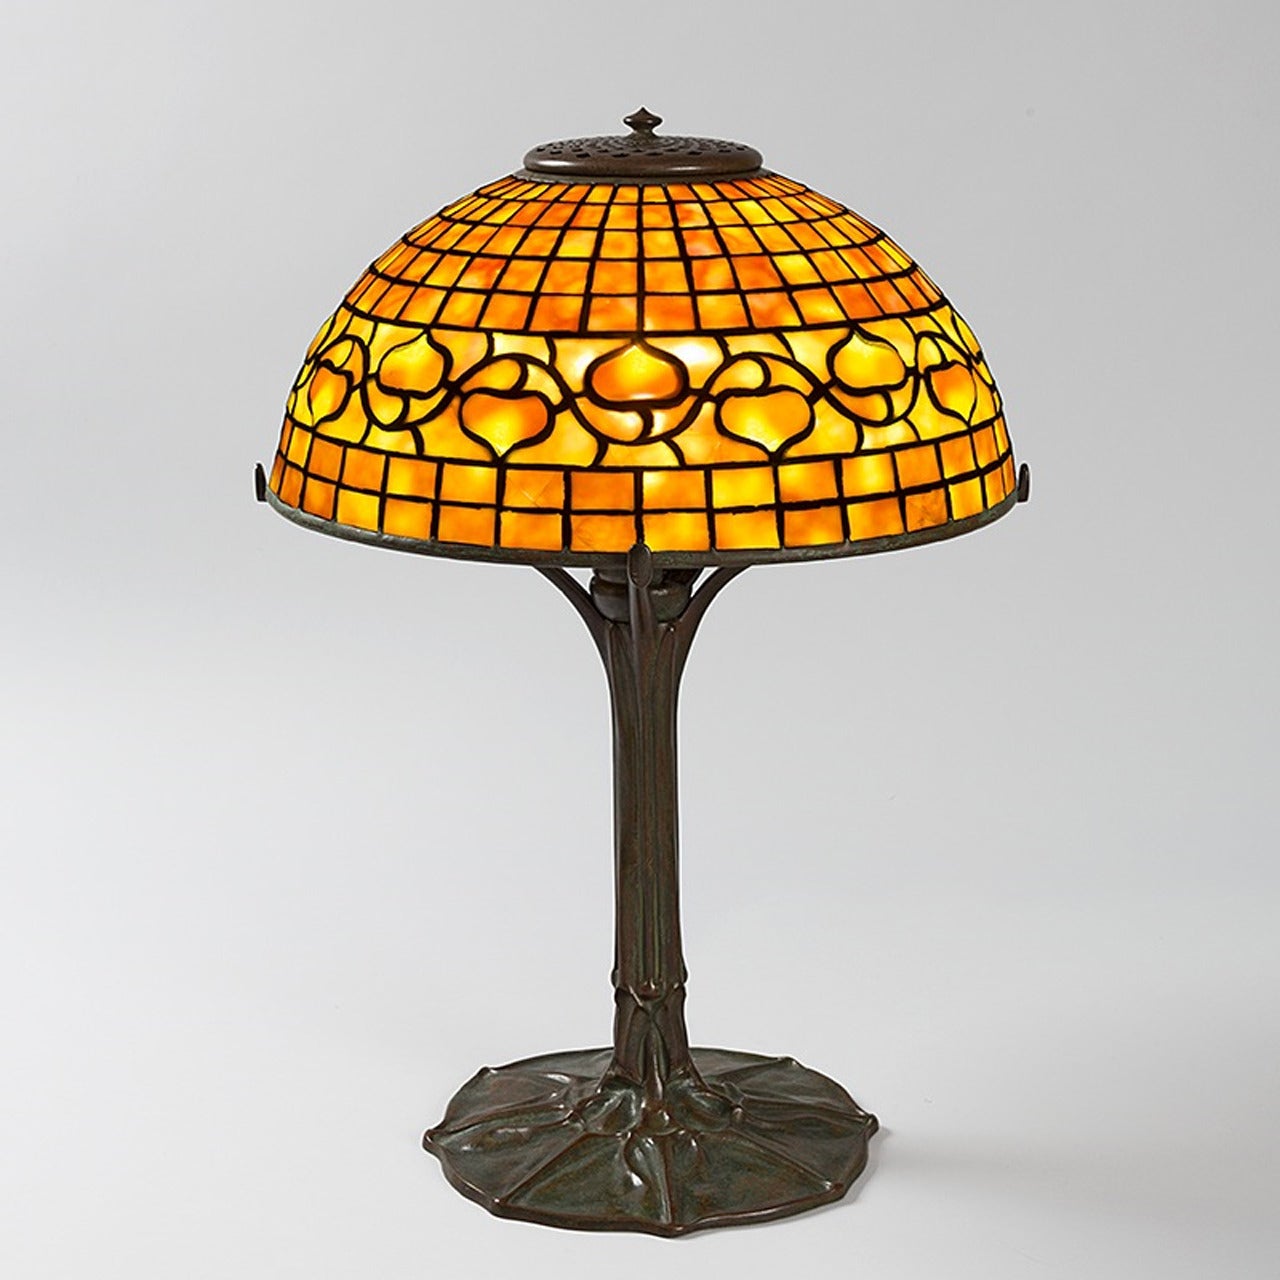 Tiffany Studios "Acorn" Table Lamp